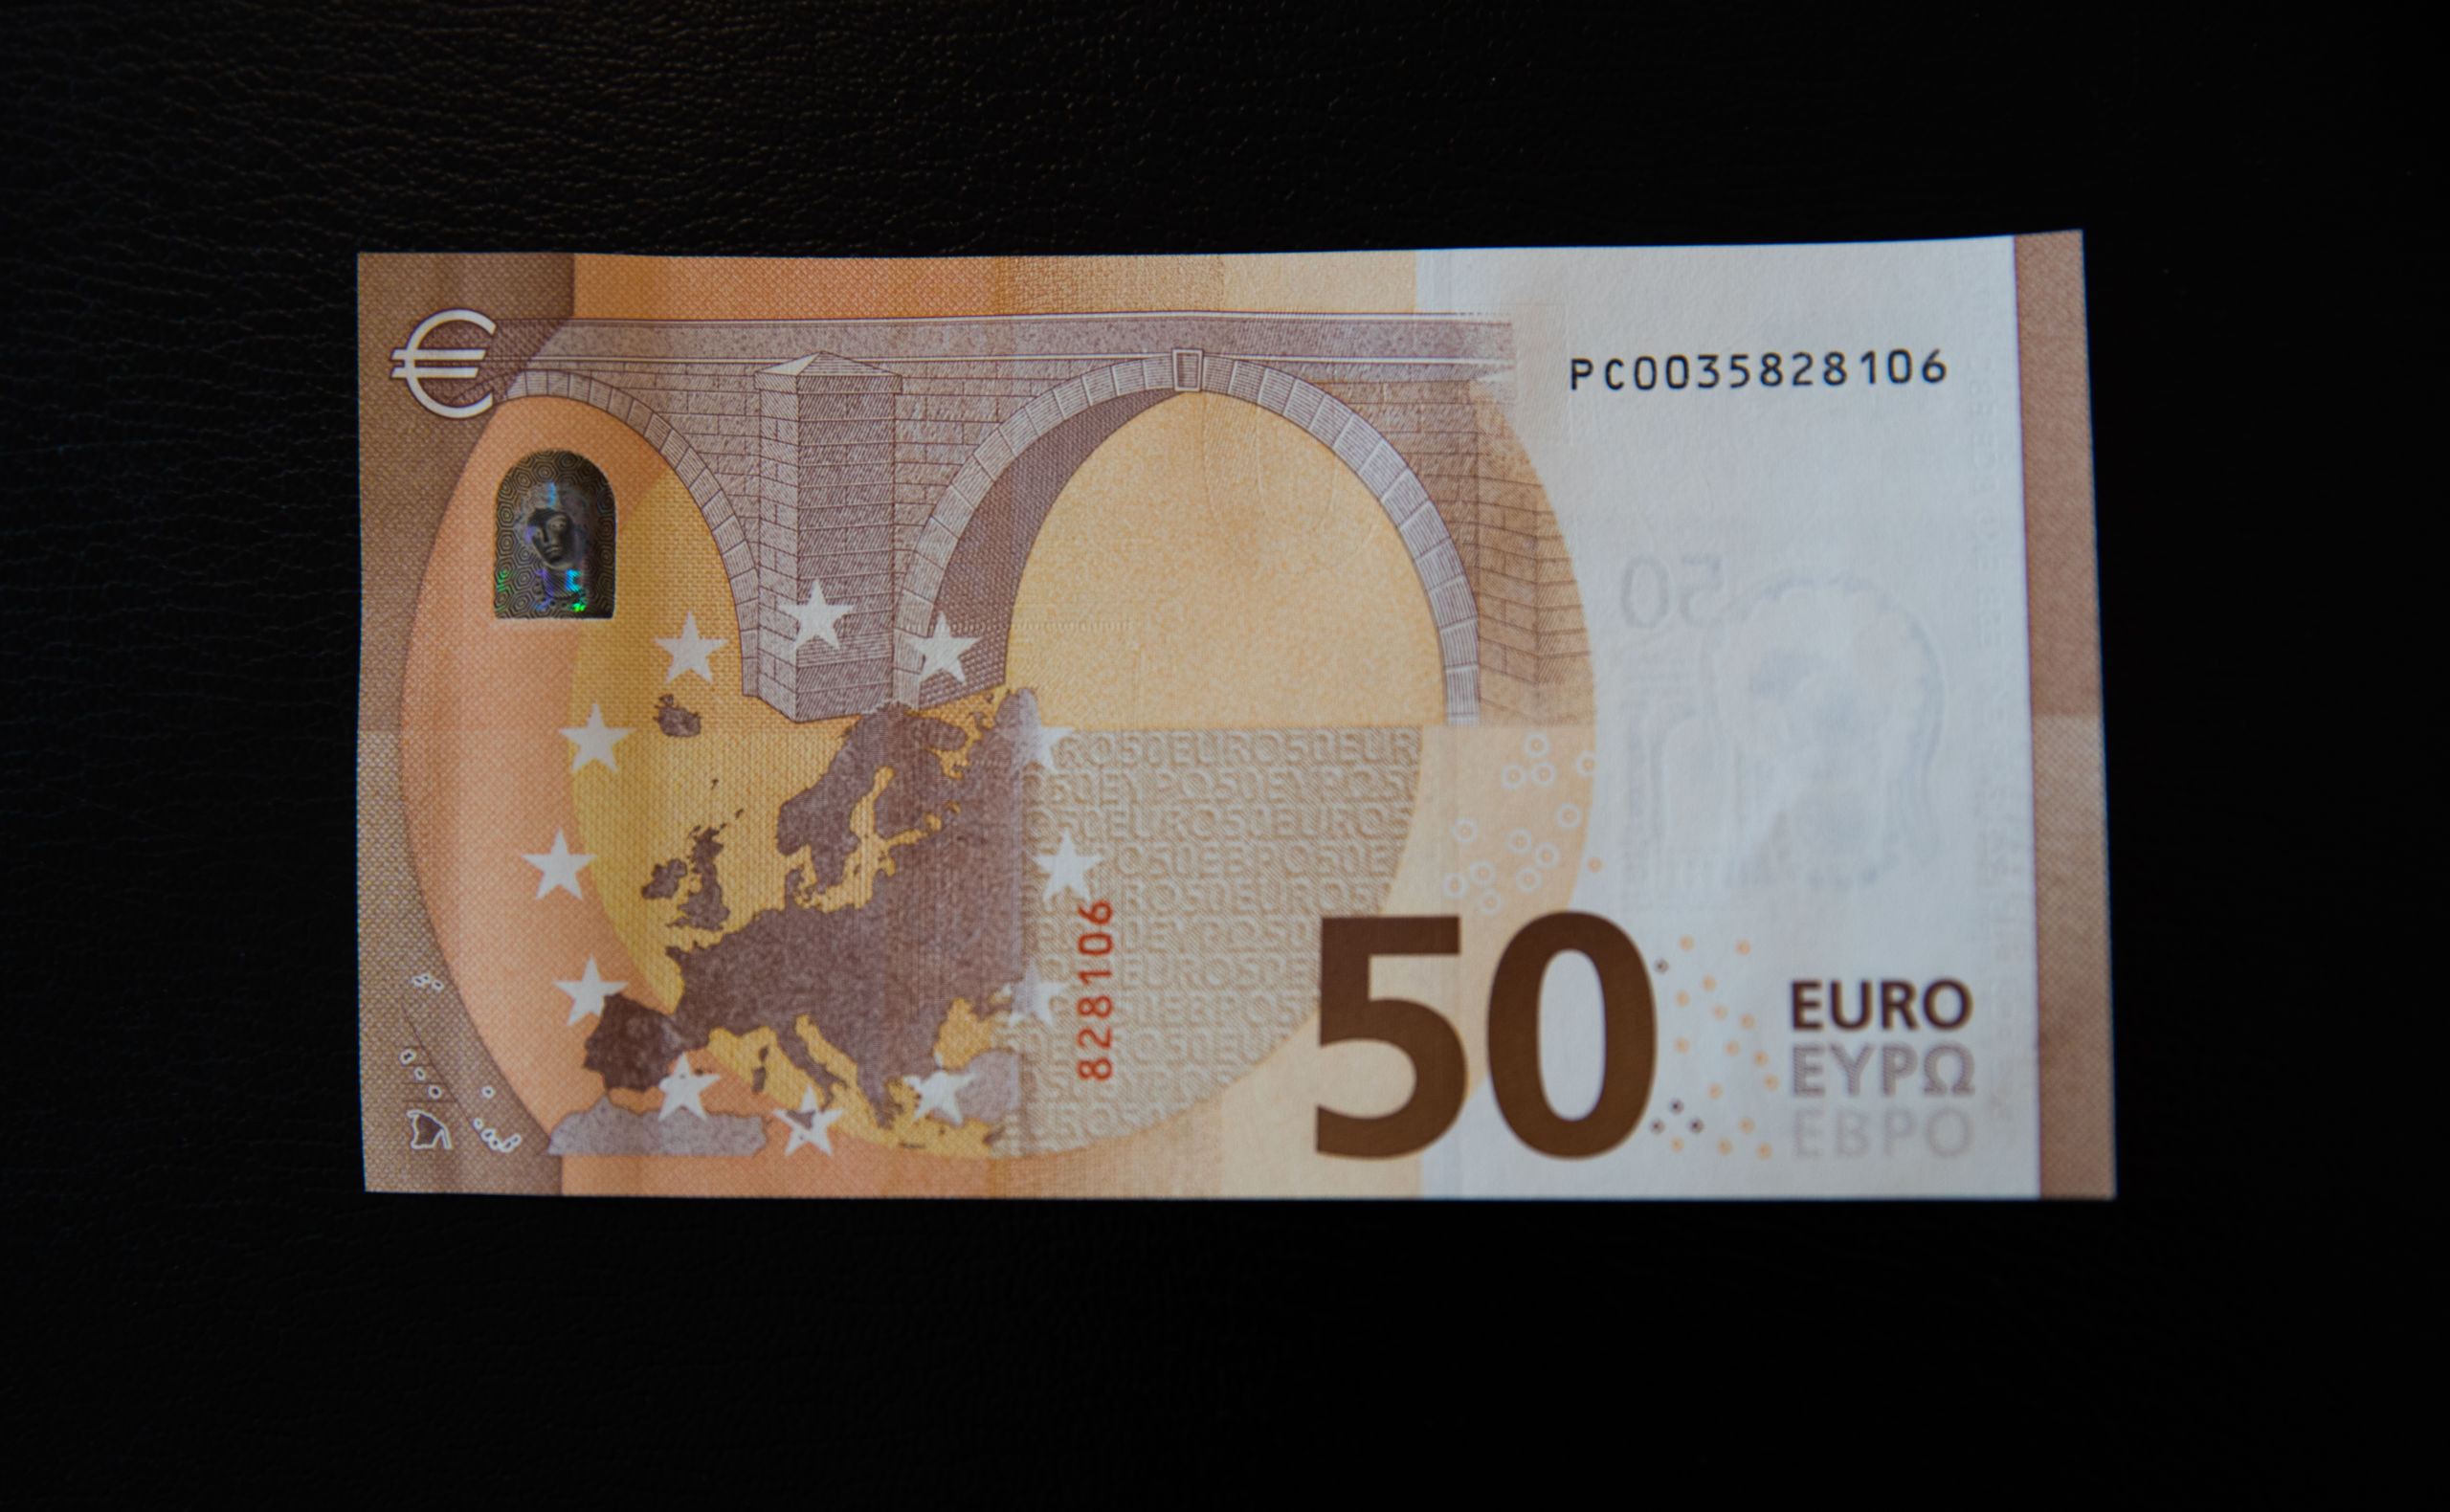 Het nieuwe bankbiljet van 50 euro dat vanaf 4 april door De Nederlandsche Bank wordt verspreid. Het biljet heeft een doorzichtig venster met daarin een hologram met het portret van de mythologische figuur Europa. Verder bevat het een smaragdgroen cijfer en een aantal nieuwe echtheidskenmerken. 